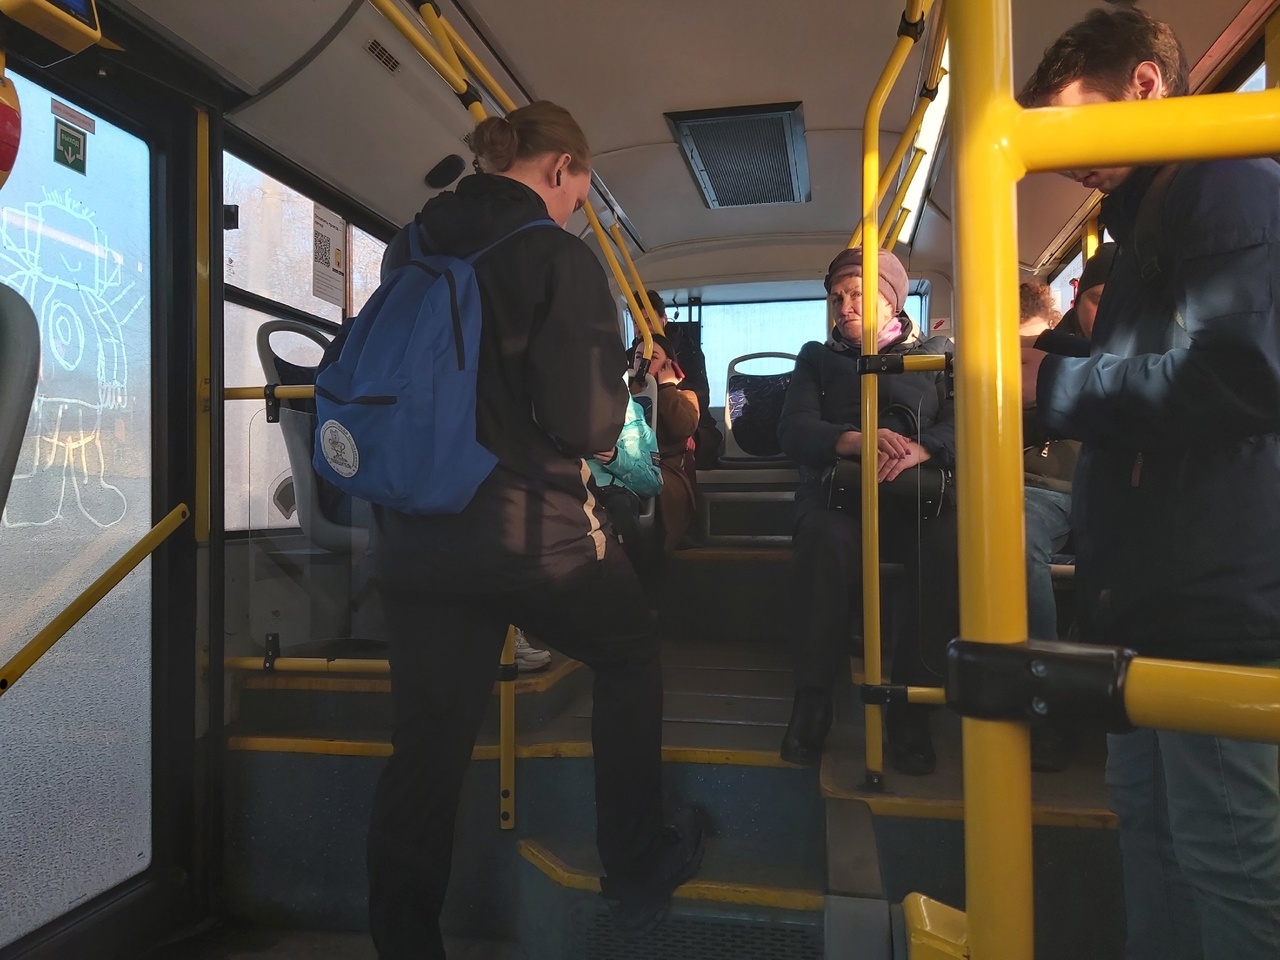  "Катайтесь по городу пустые": ярославцы недовольны работой общественного транспорта в городе